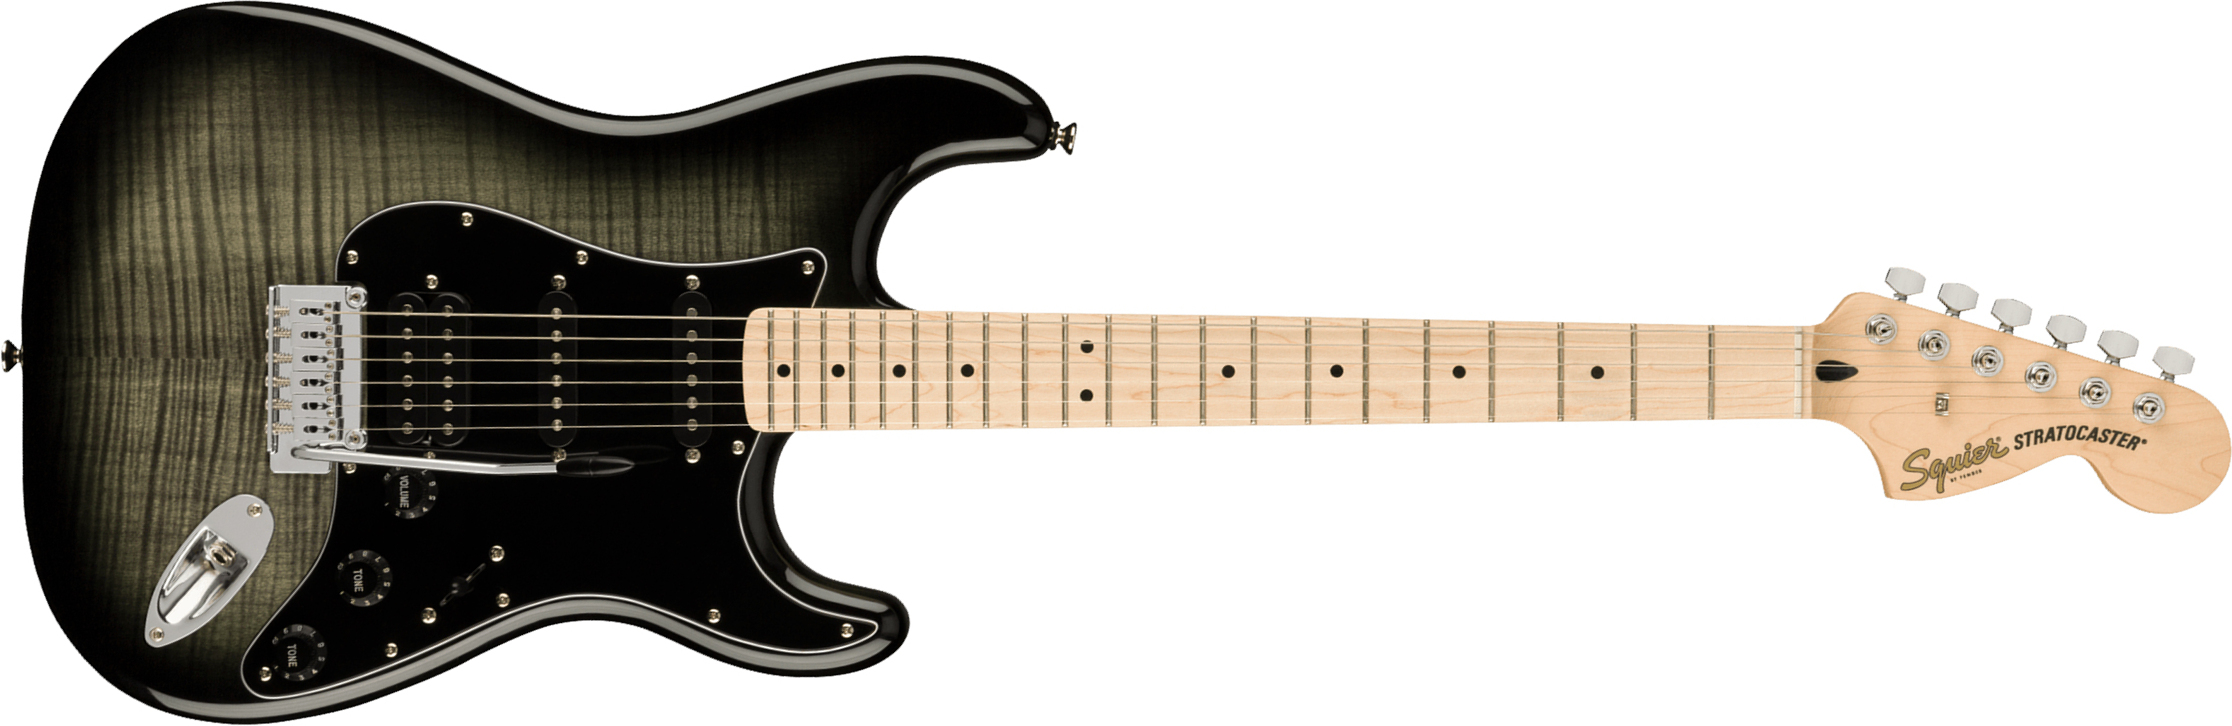 Squier Strat Affinity Fmt Hss 2021 Trem Mn - Black Burst - Elektrische gitaar in Str-vorm - Main picture